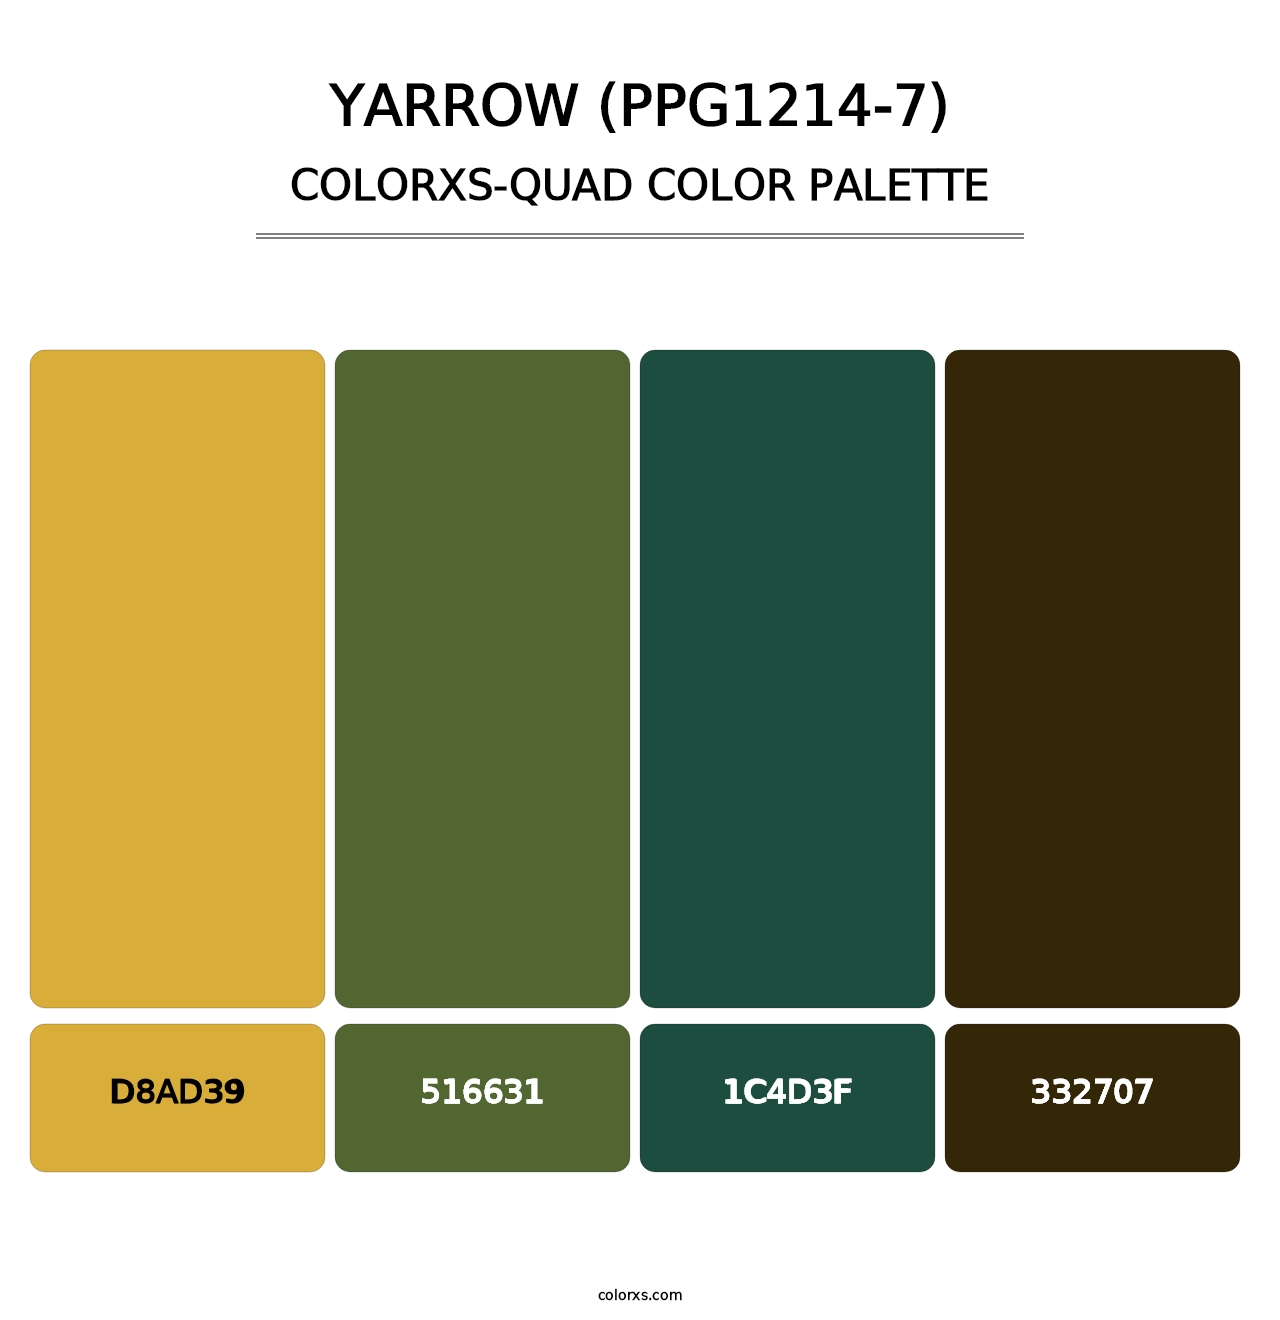 Yarrow (PPG1214-7) - Colorxs Quad Palette